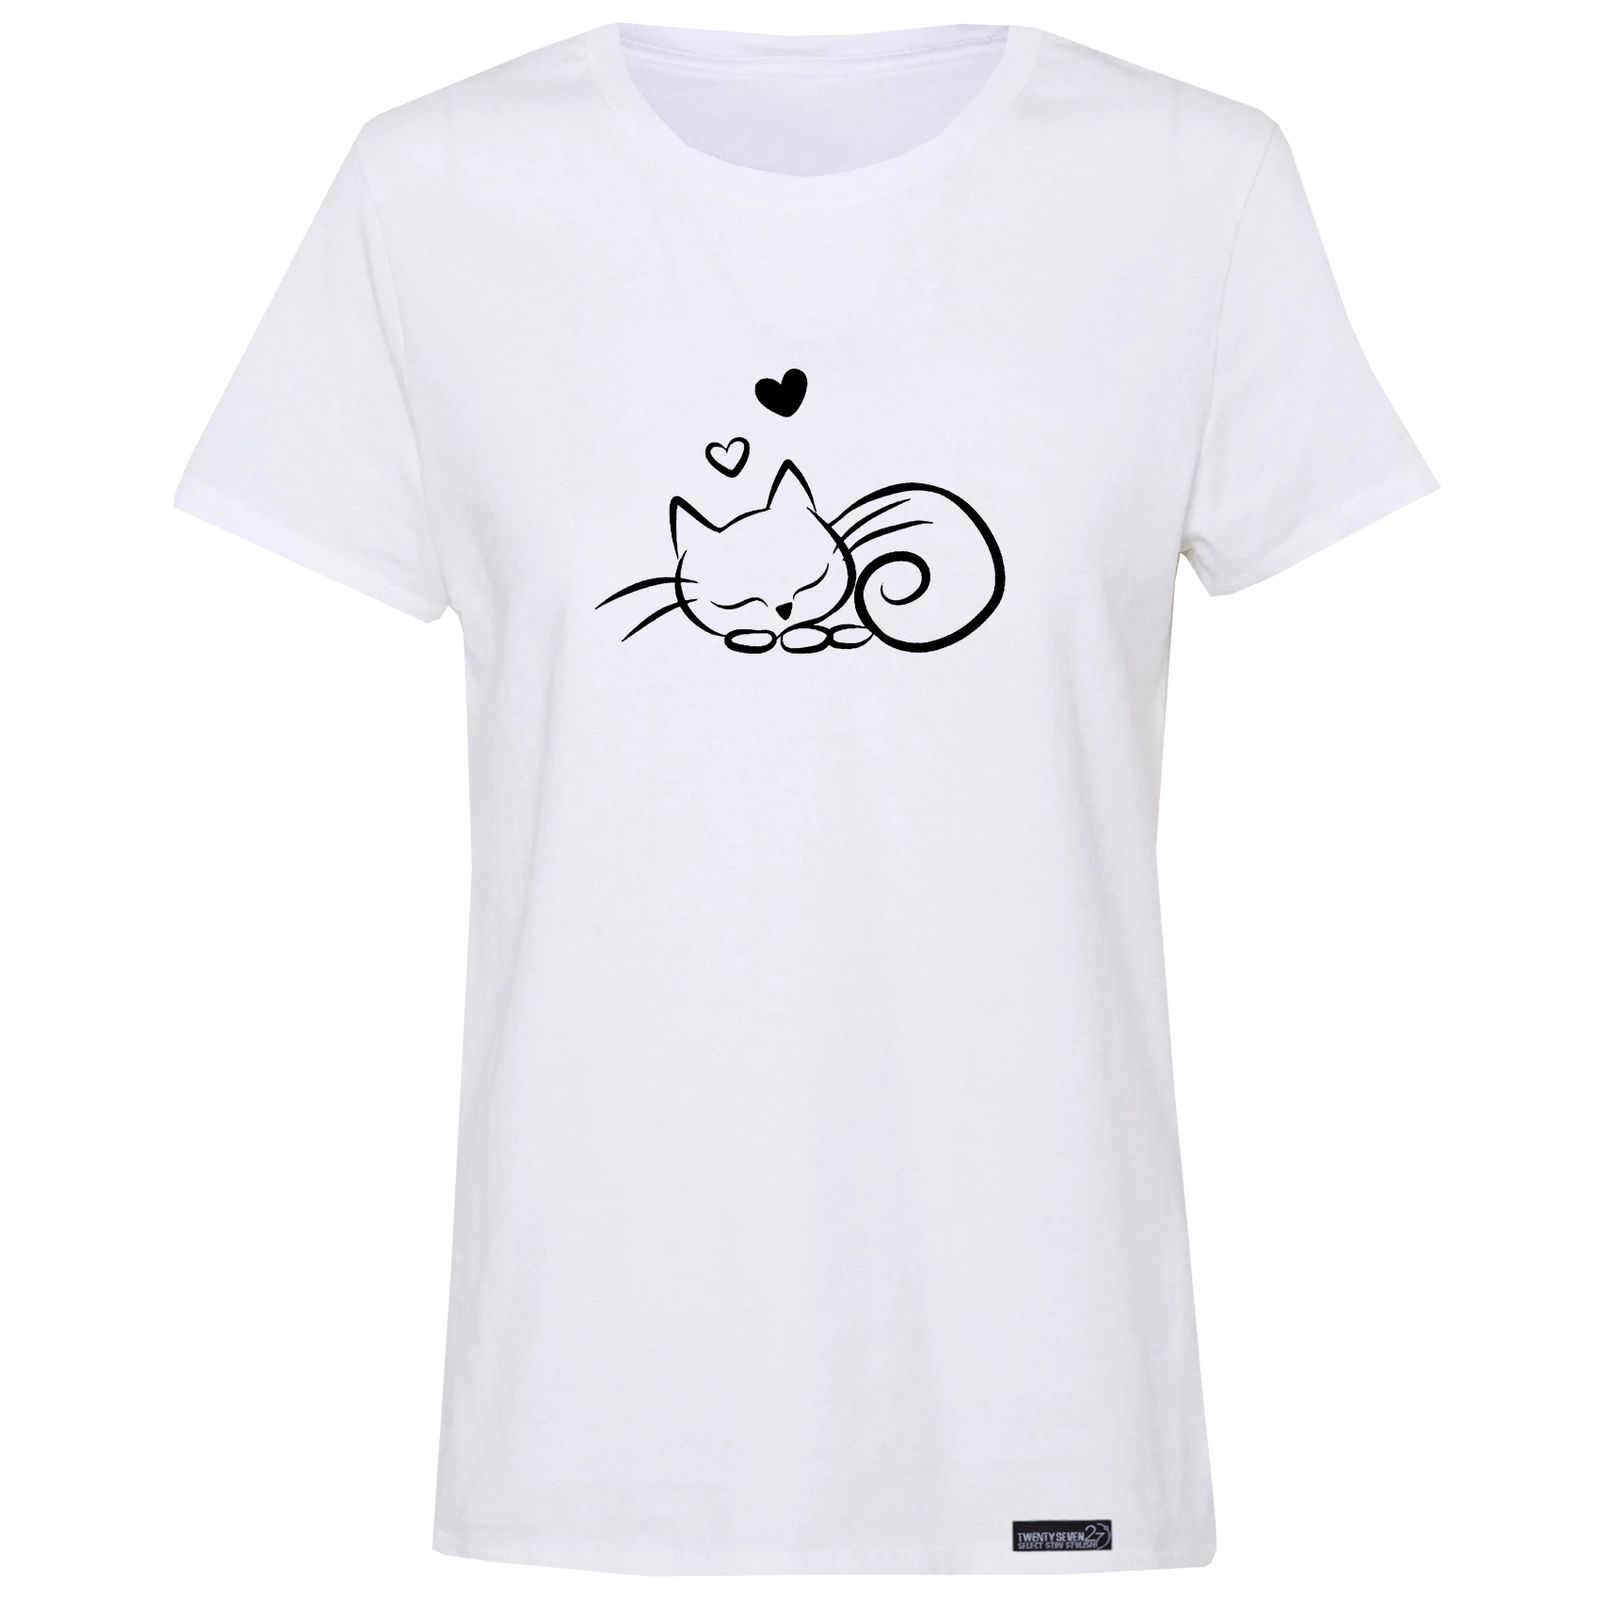 تی شرت آستین کوتاه زنانه 27 مدل گربه کد RN550 -  - 2